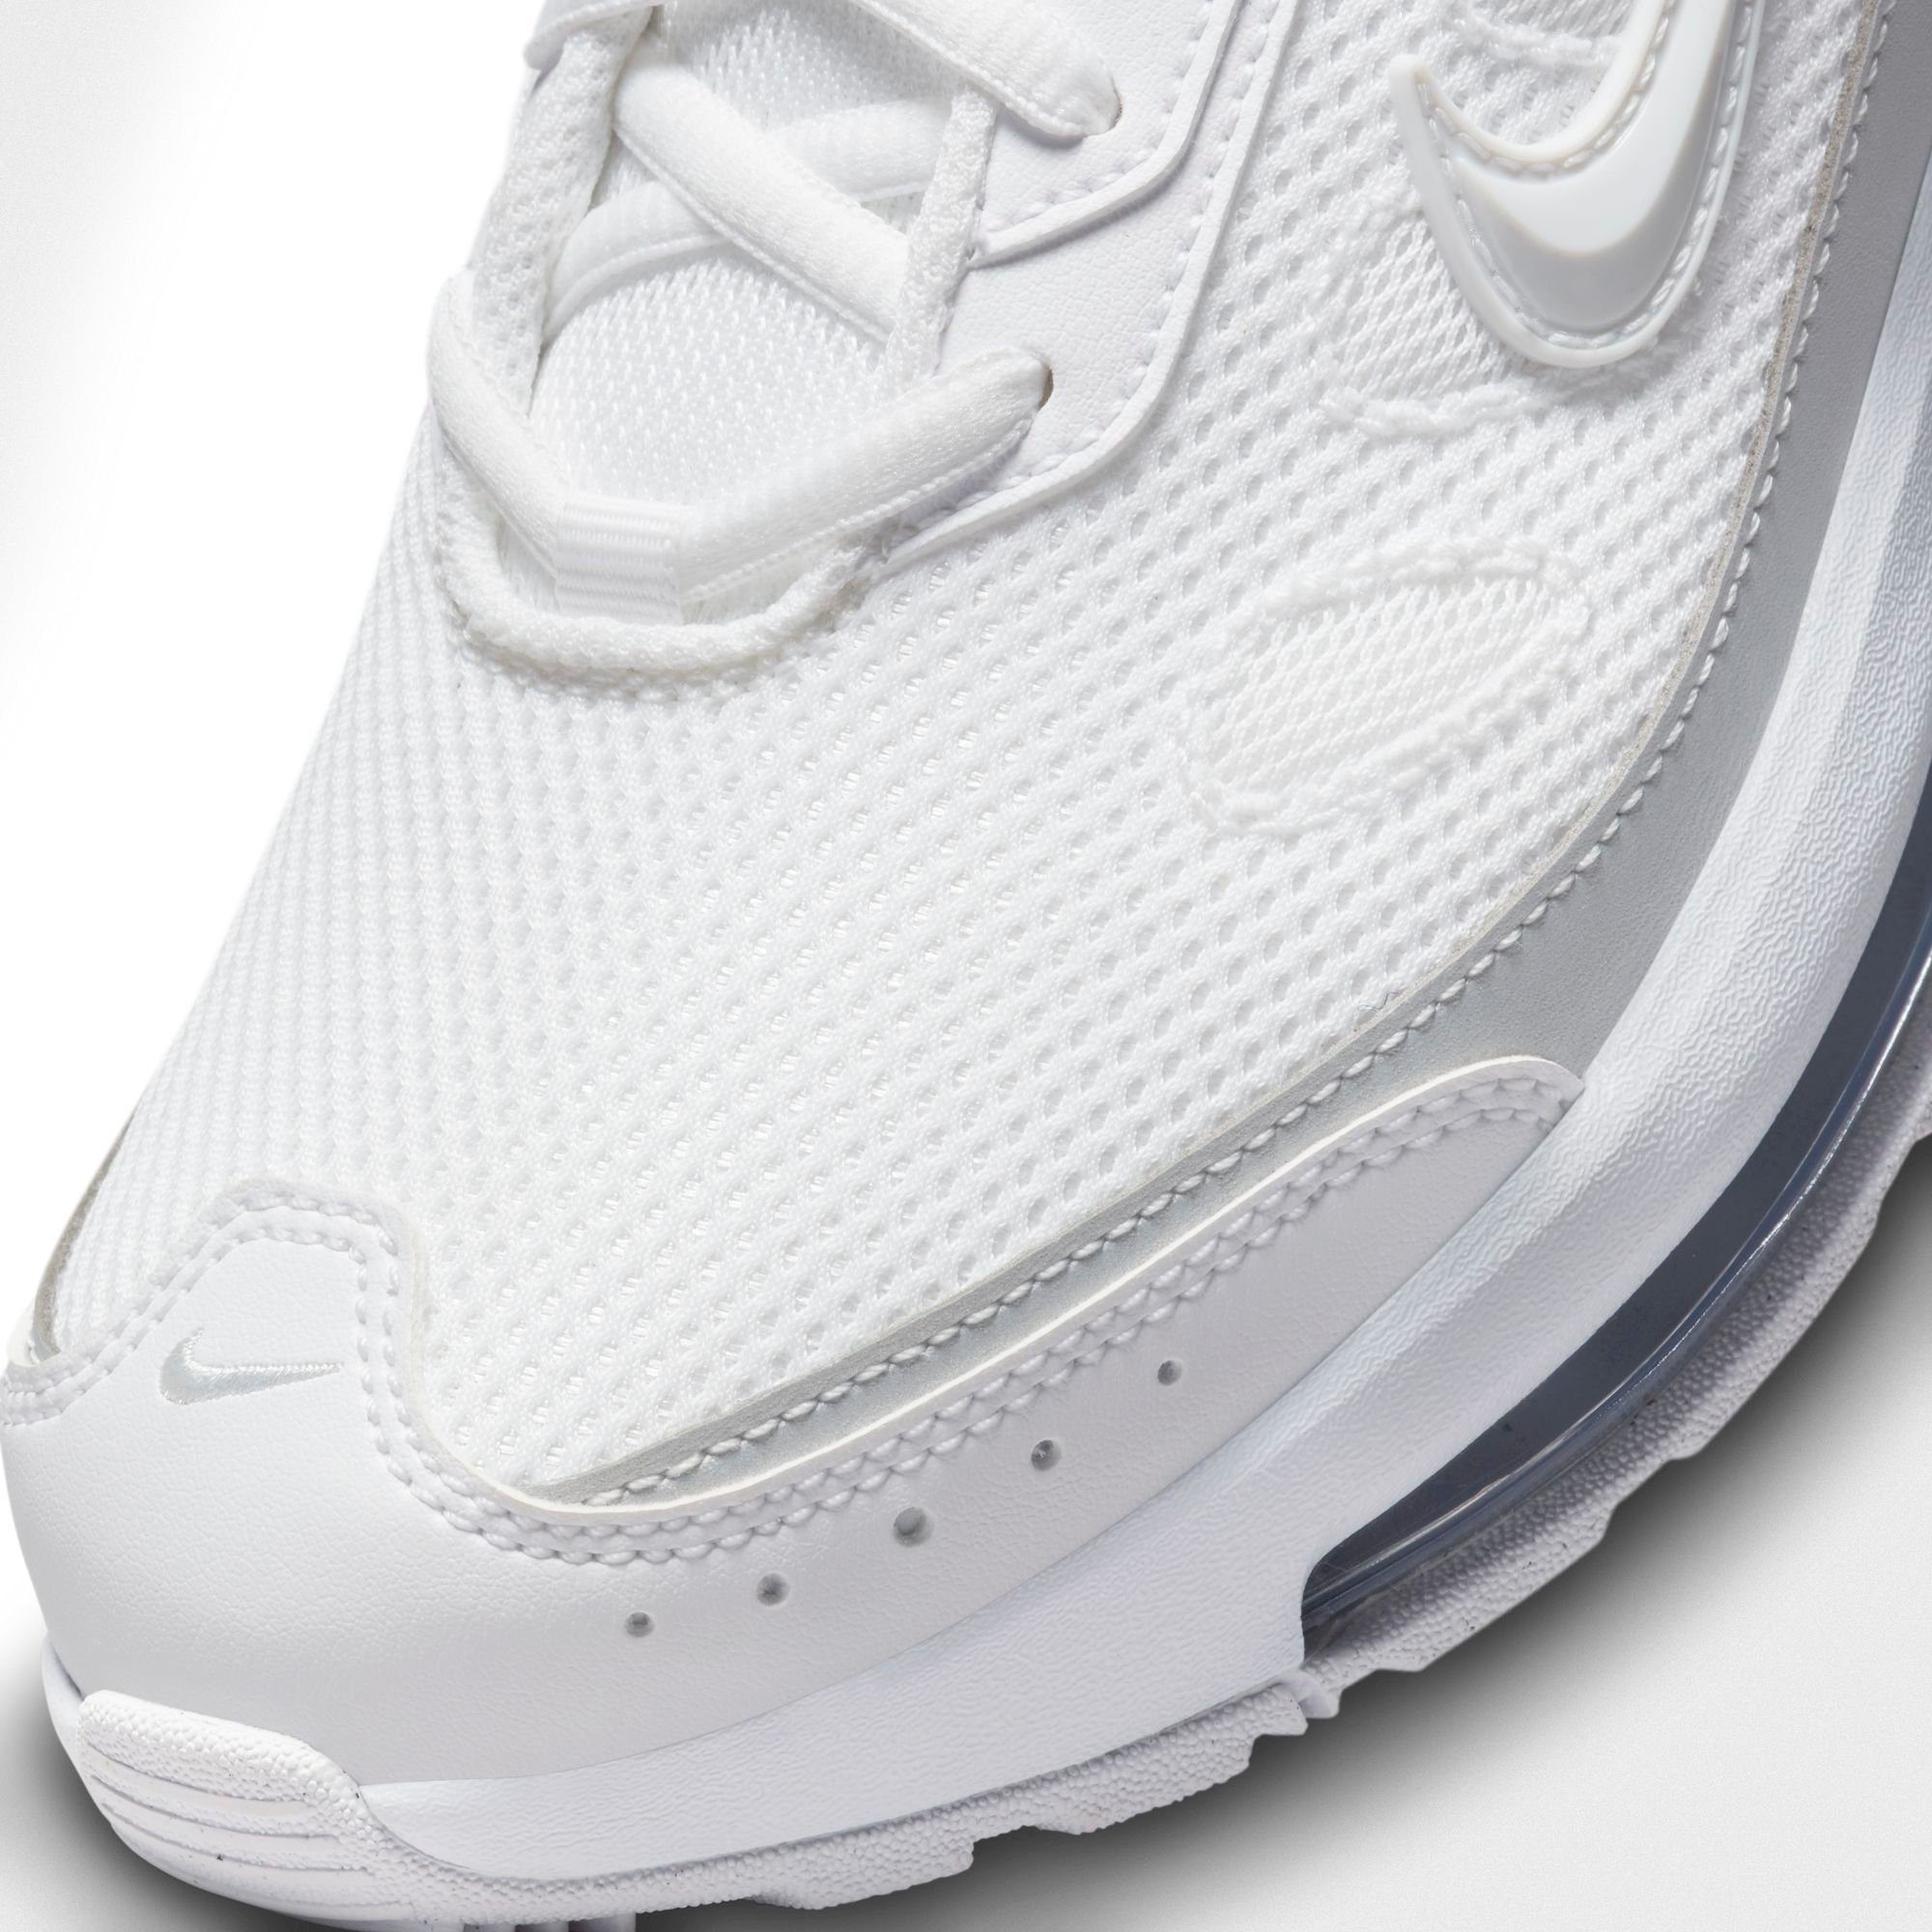 Nike Sportswear AIR MAX WHITE-PURE-PLATINUM-WHITE-MTLC-PLATINUM AP Sneaker